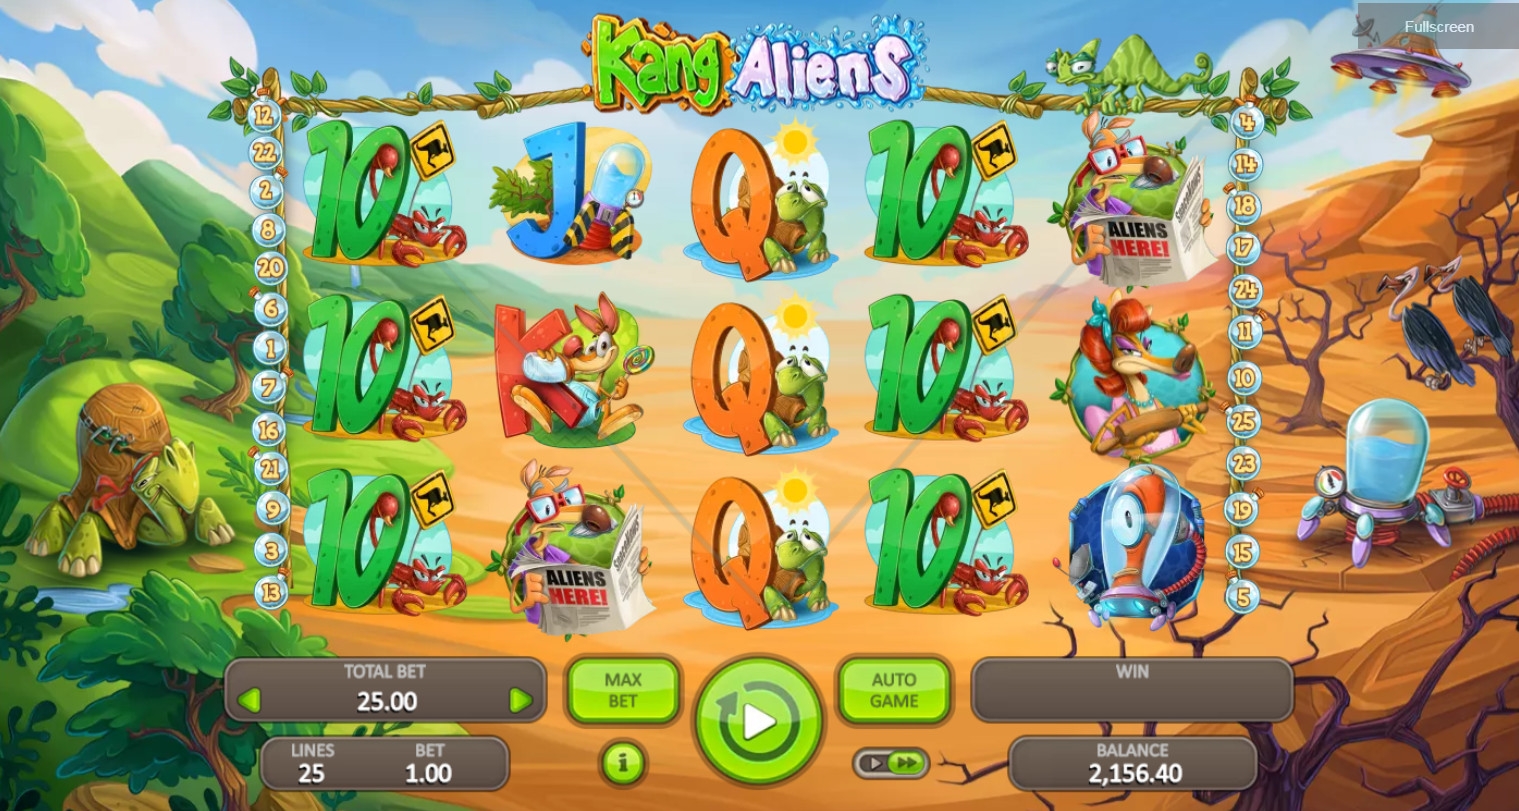 Kang Aliens (Kang Aliens) from category Slots